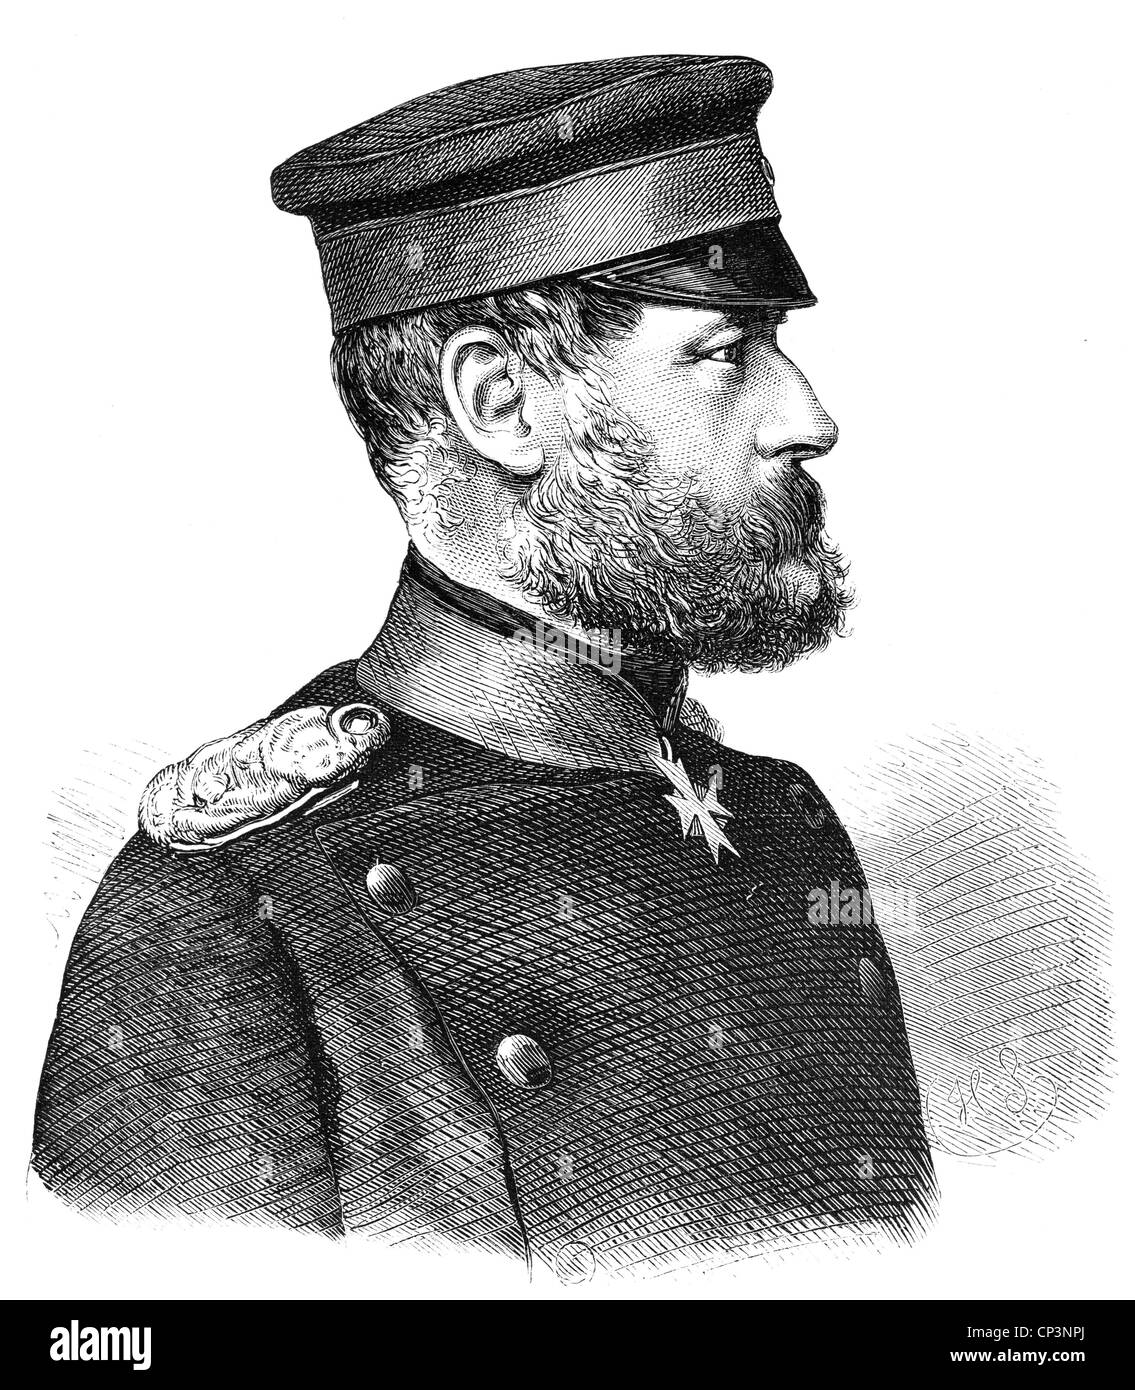 Stiehle, Gustav von, 14.8.1823 - 15.11.1899, Prussian general, portrait, wood engraving, circa 1870, Stock Photo